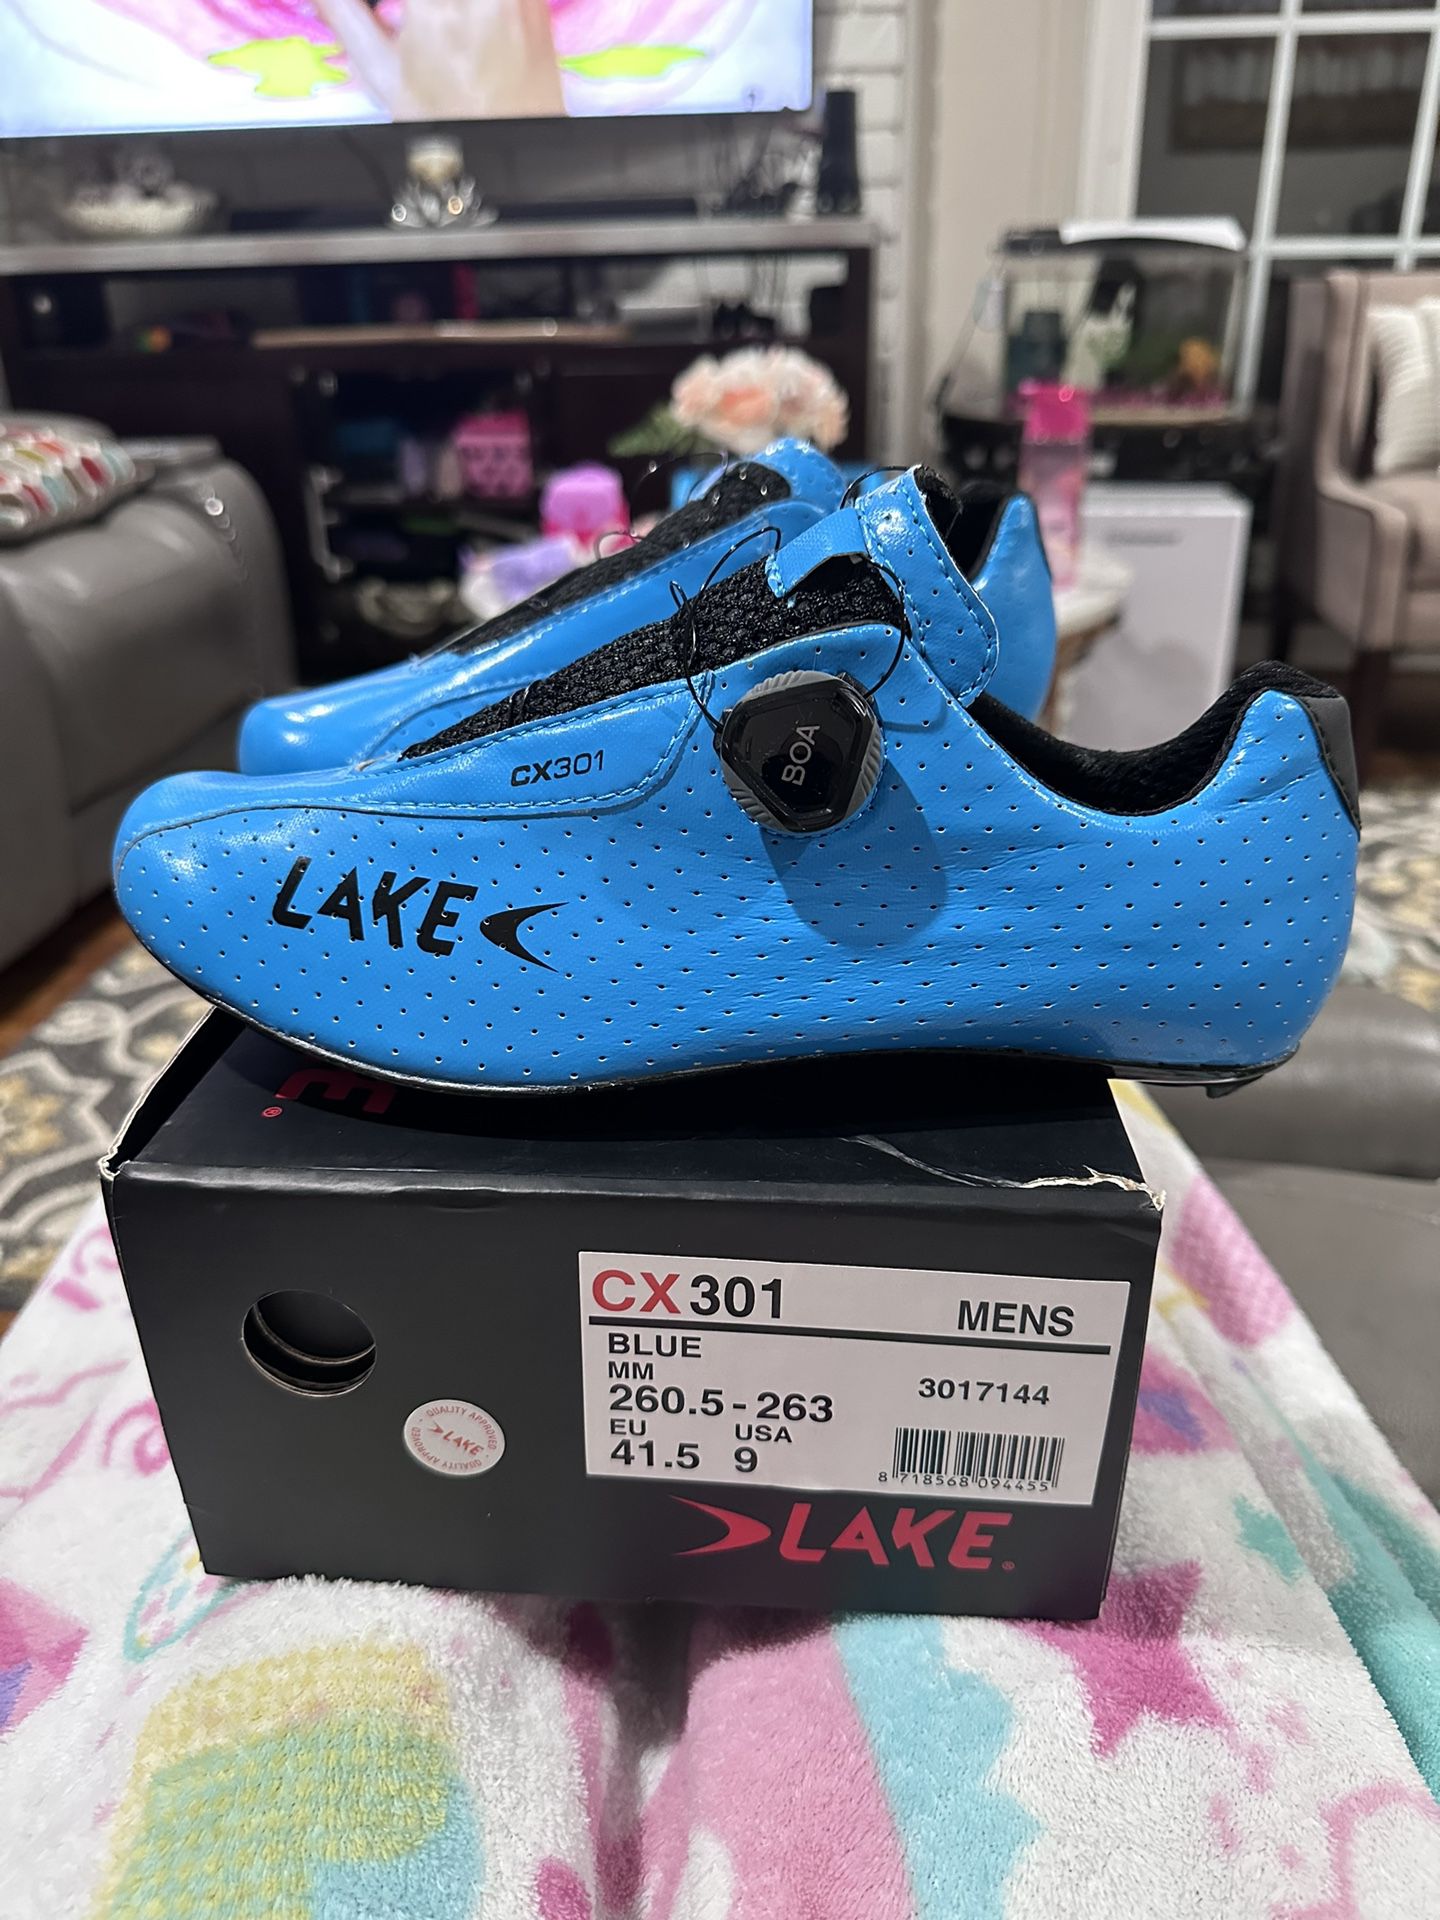 Lake CX 301 Road Bike Carbon Shoes, 41.5EU/9US